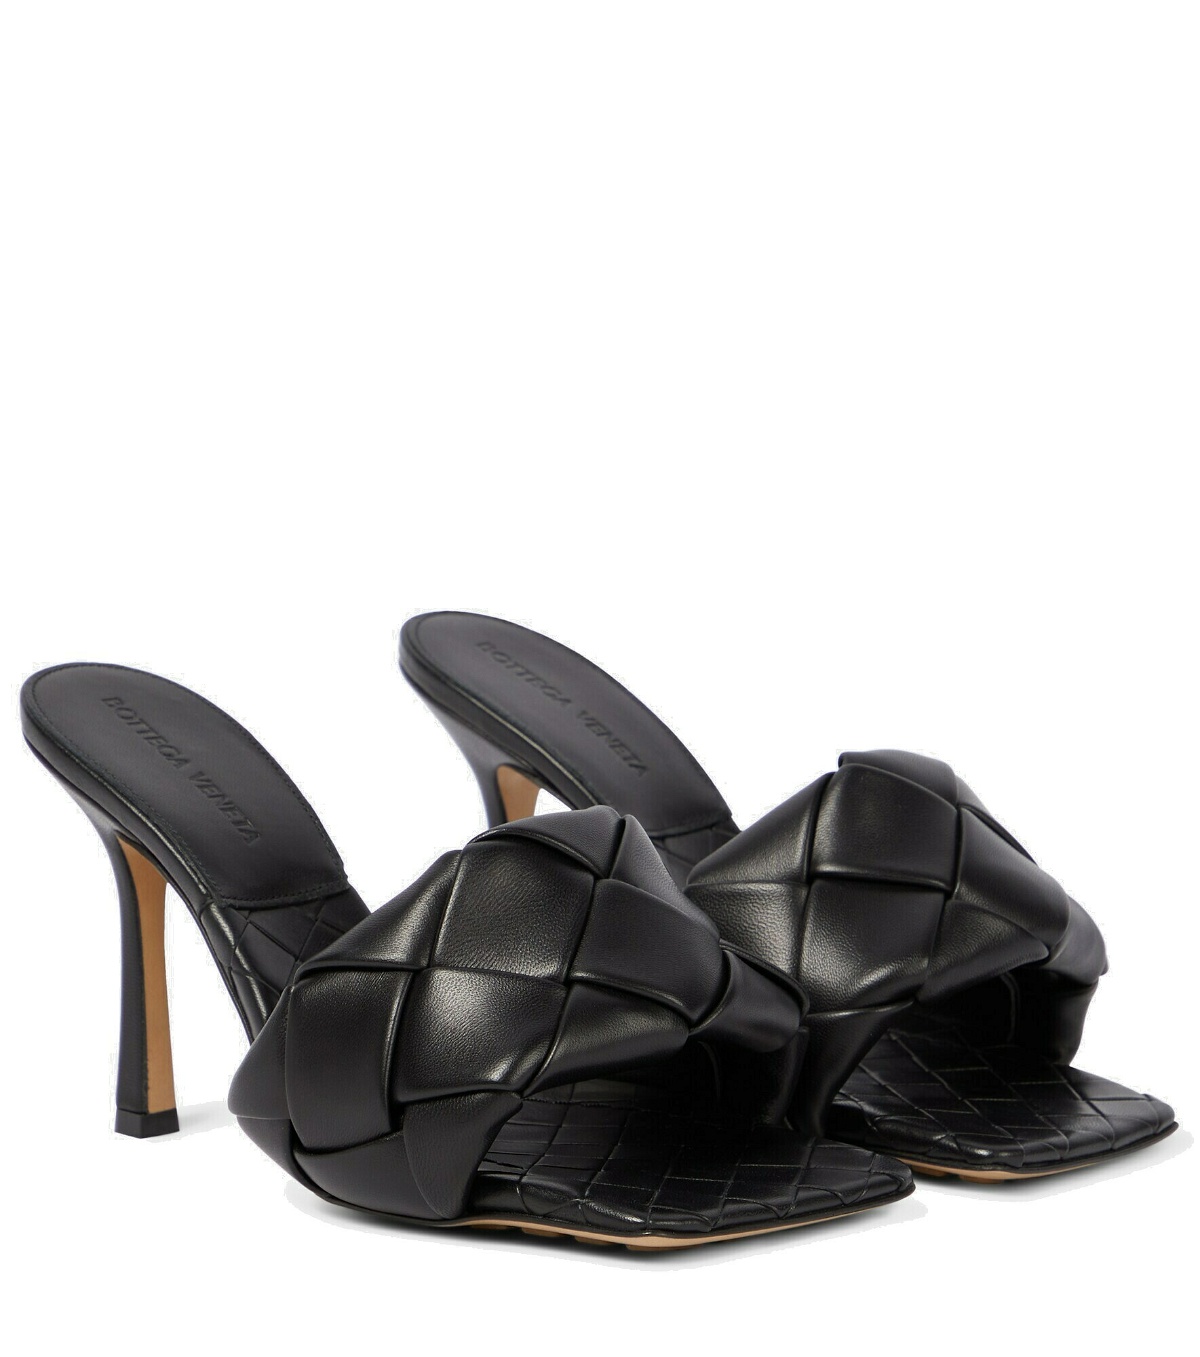 Bottega Veneta - Lido leather sandals Bottega Veneta